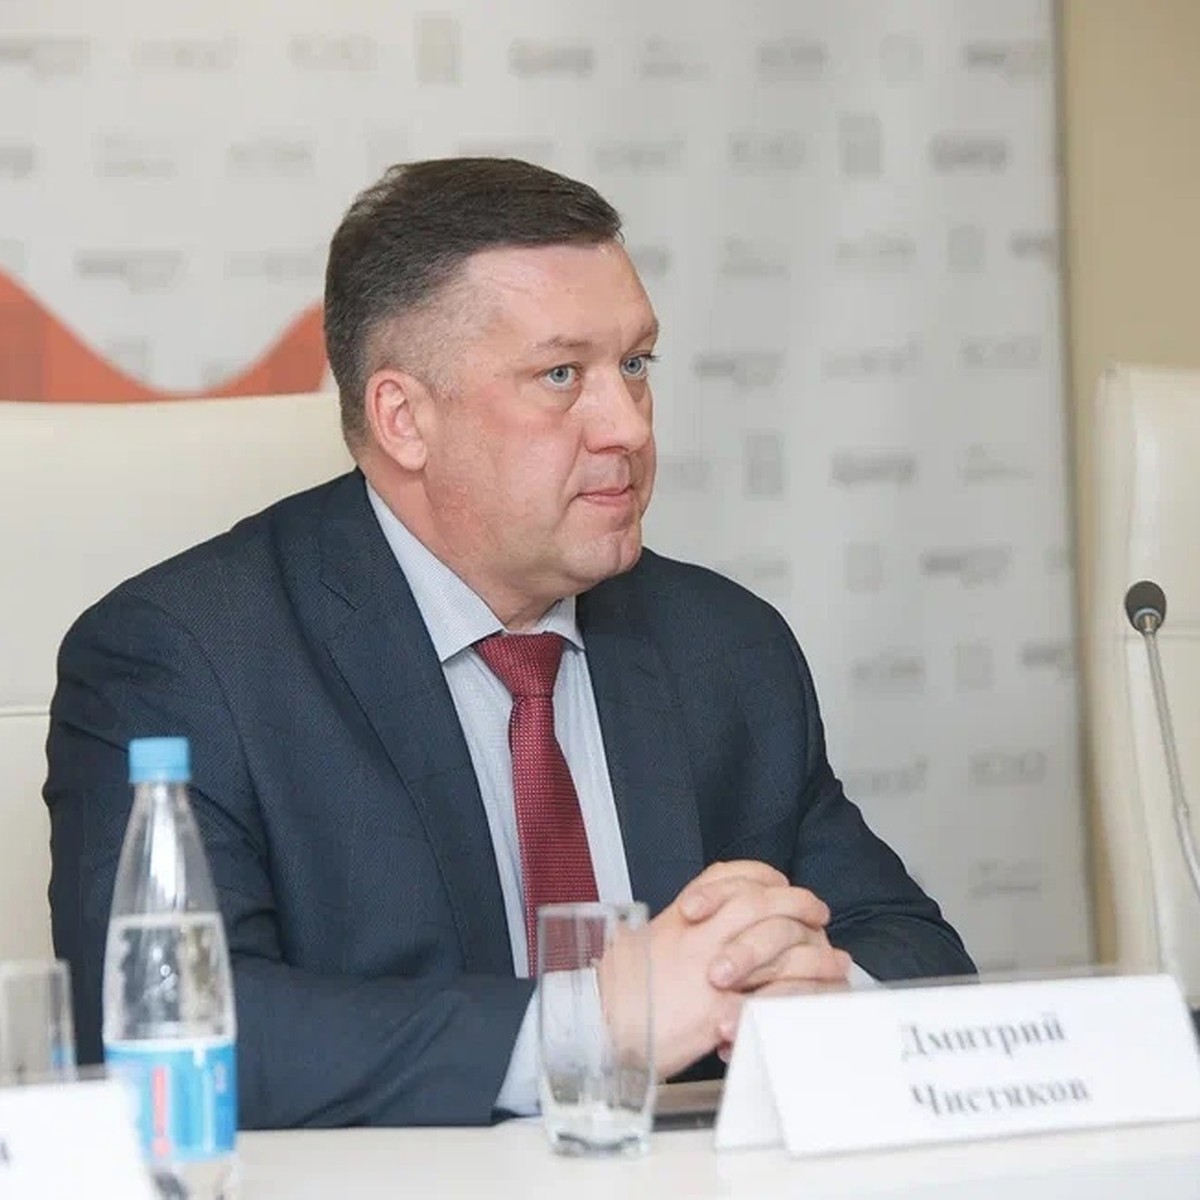 Дмитрий Чистяков выбран на пост главы Ижевска - KP.RU